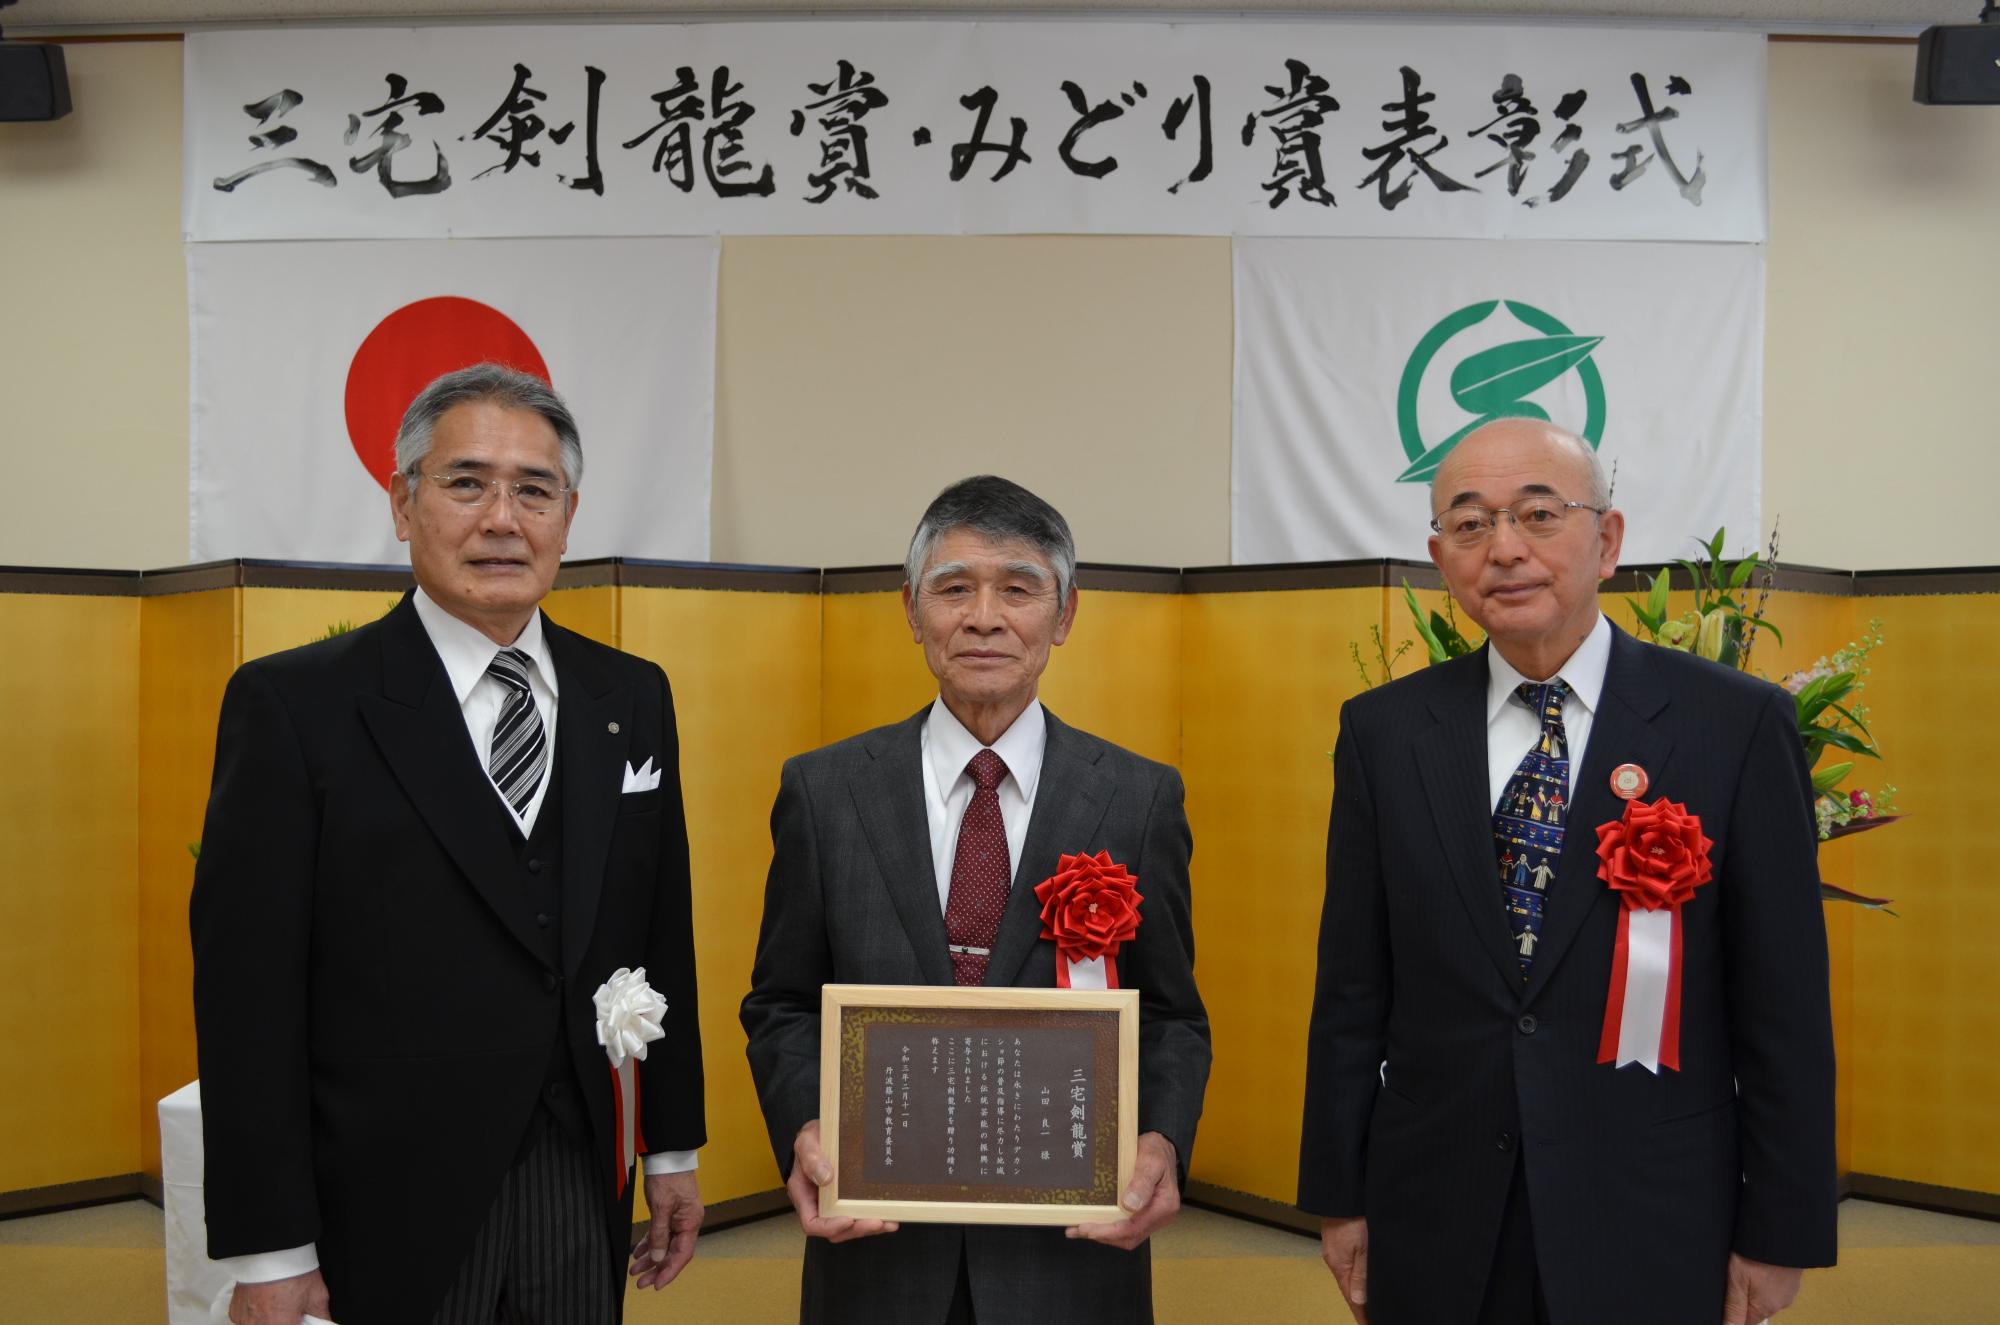 教育長と市長、表彰盾を手に持つ山田さん。